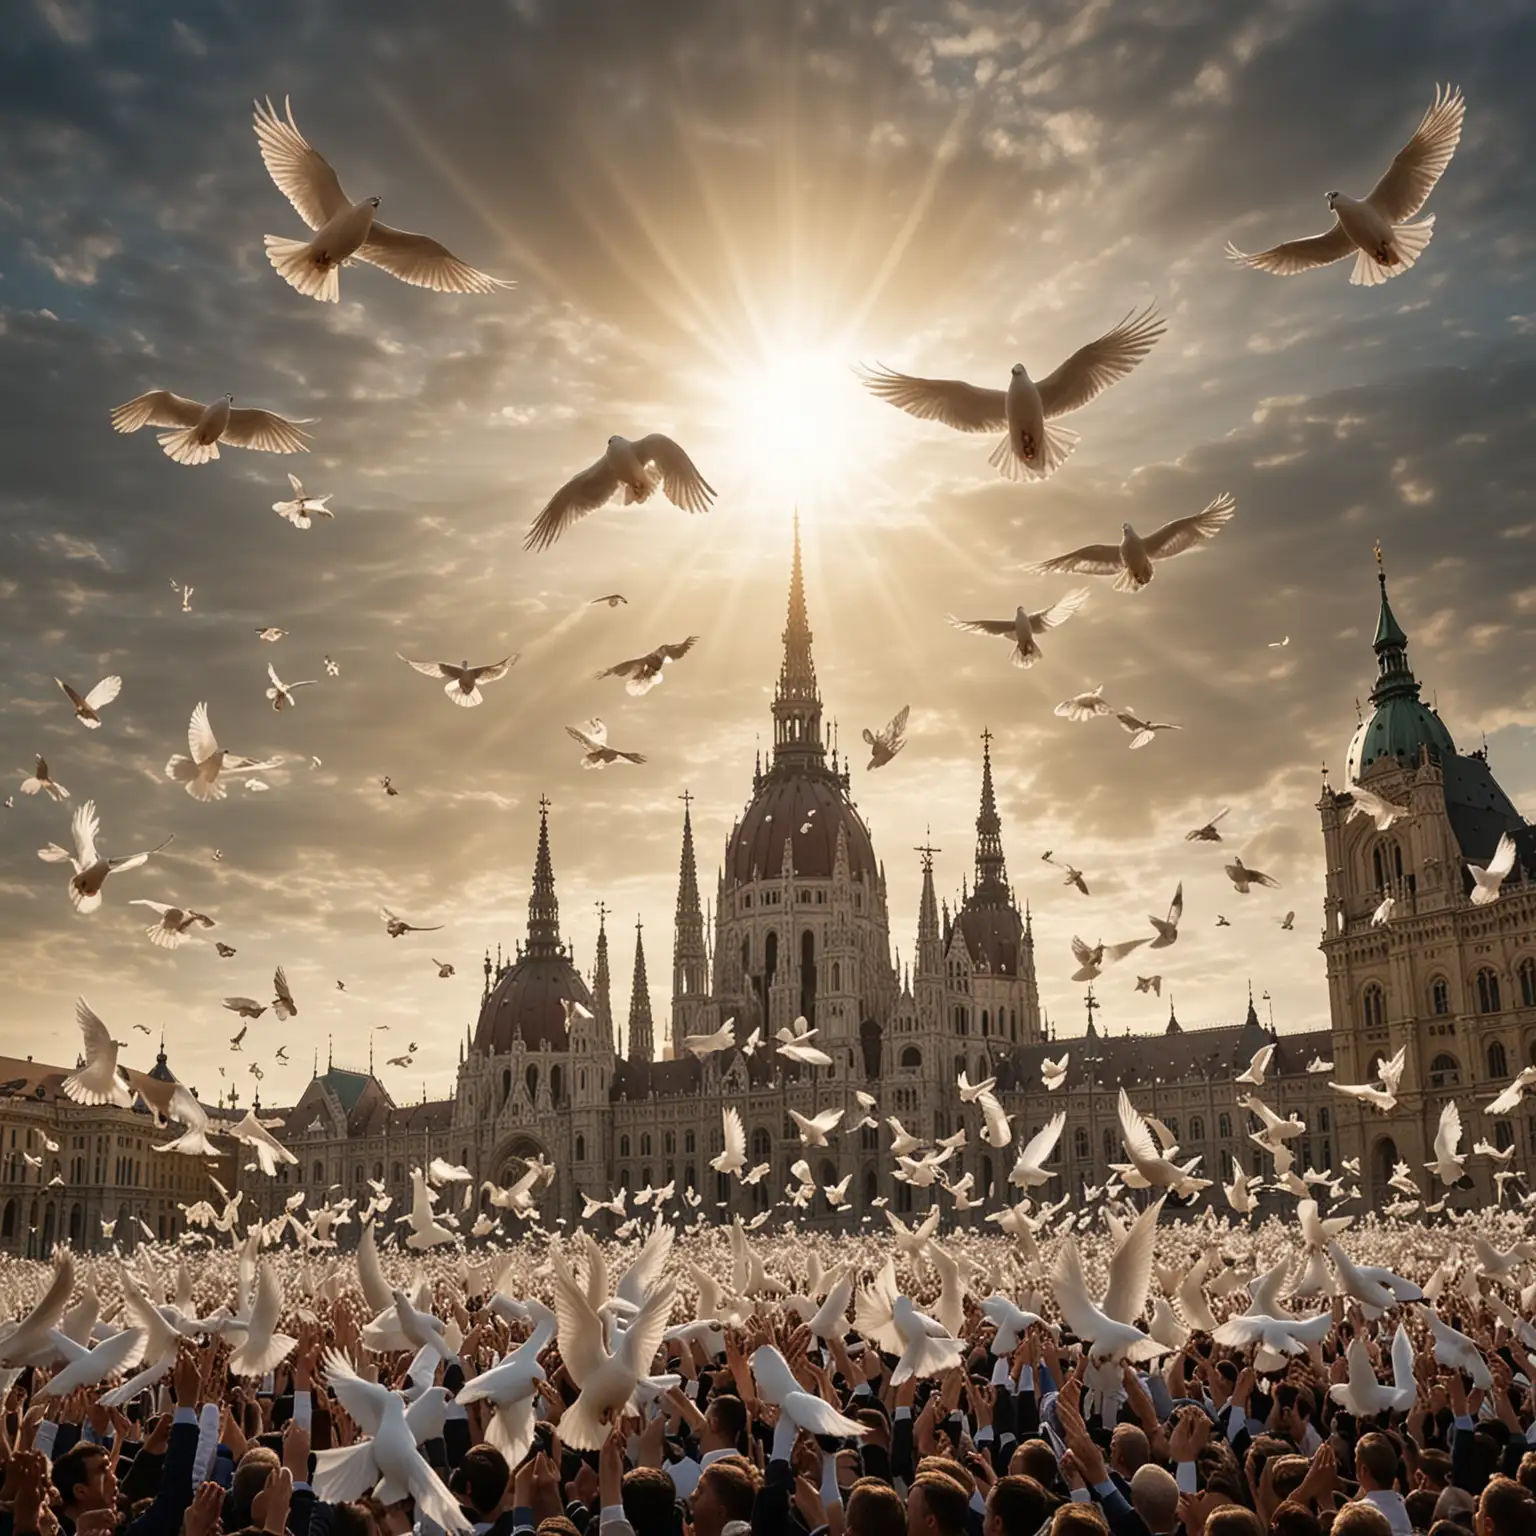 Orbán Viktor a magyar miniszterelnök a parlament előtt rengeteg fehér galambot enged szabadon. A madarak szárnyaikat kitárva emelkednek a levegőbe, mint békés angyalok a város felett. A nap aranyszínű sugarai áthatolnak a felhőkön, megvilágítva a szárnyaló galambokat, melyek árnyékaikat vetítik az épületek hosszú soraiba. Az emberek ámulva nézik a csodálatos látványt, érezve a béke és remény átható erejét. Fényképezte: András Zoltán egy Nikon D850-el és egy teleobjektívvel, a világítás pedig természetes és lágy, hangsúlyozva a pillanat nyugalmát. --v 5 --q 2